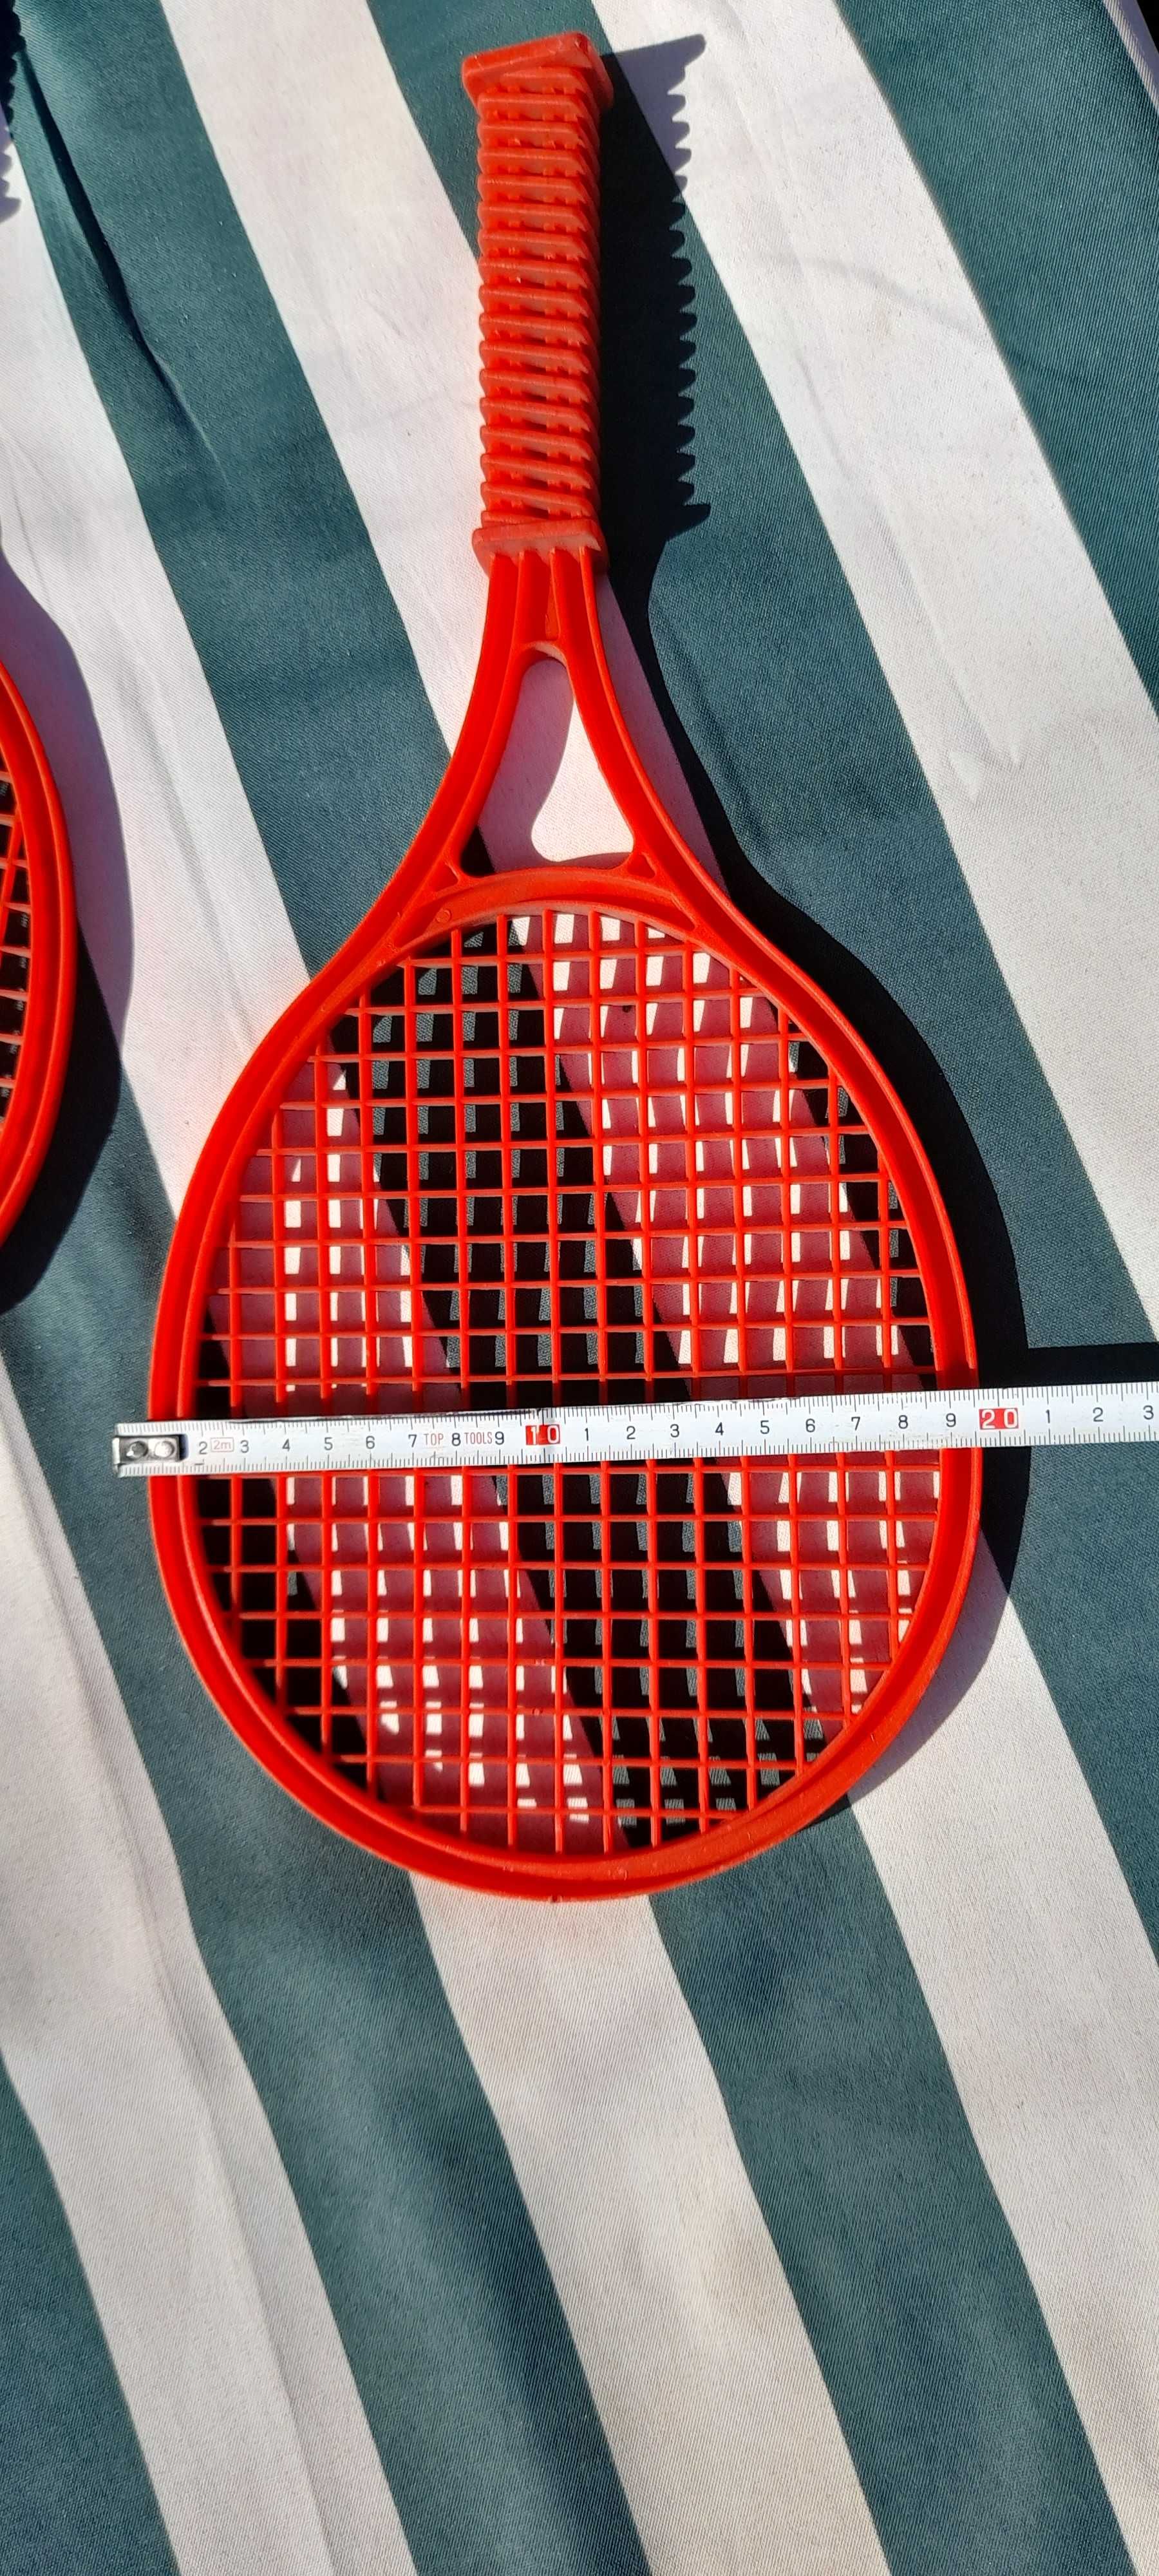 Paletki do badmintona plażowe plastikowe 10 zł za 2 sztuki.